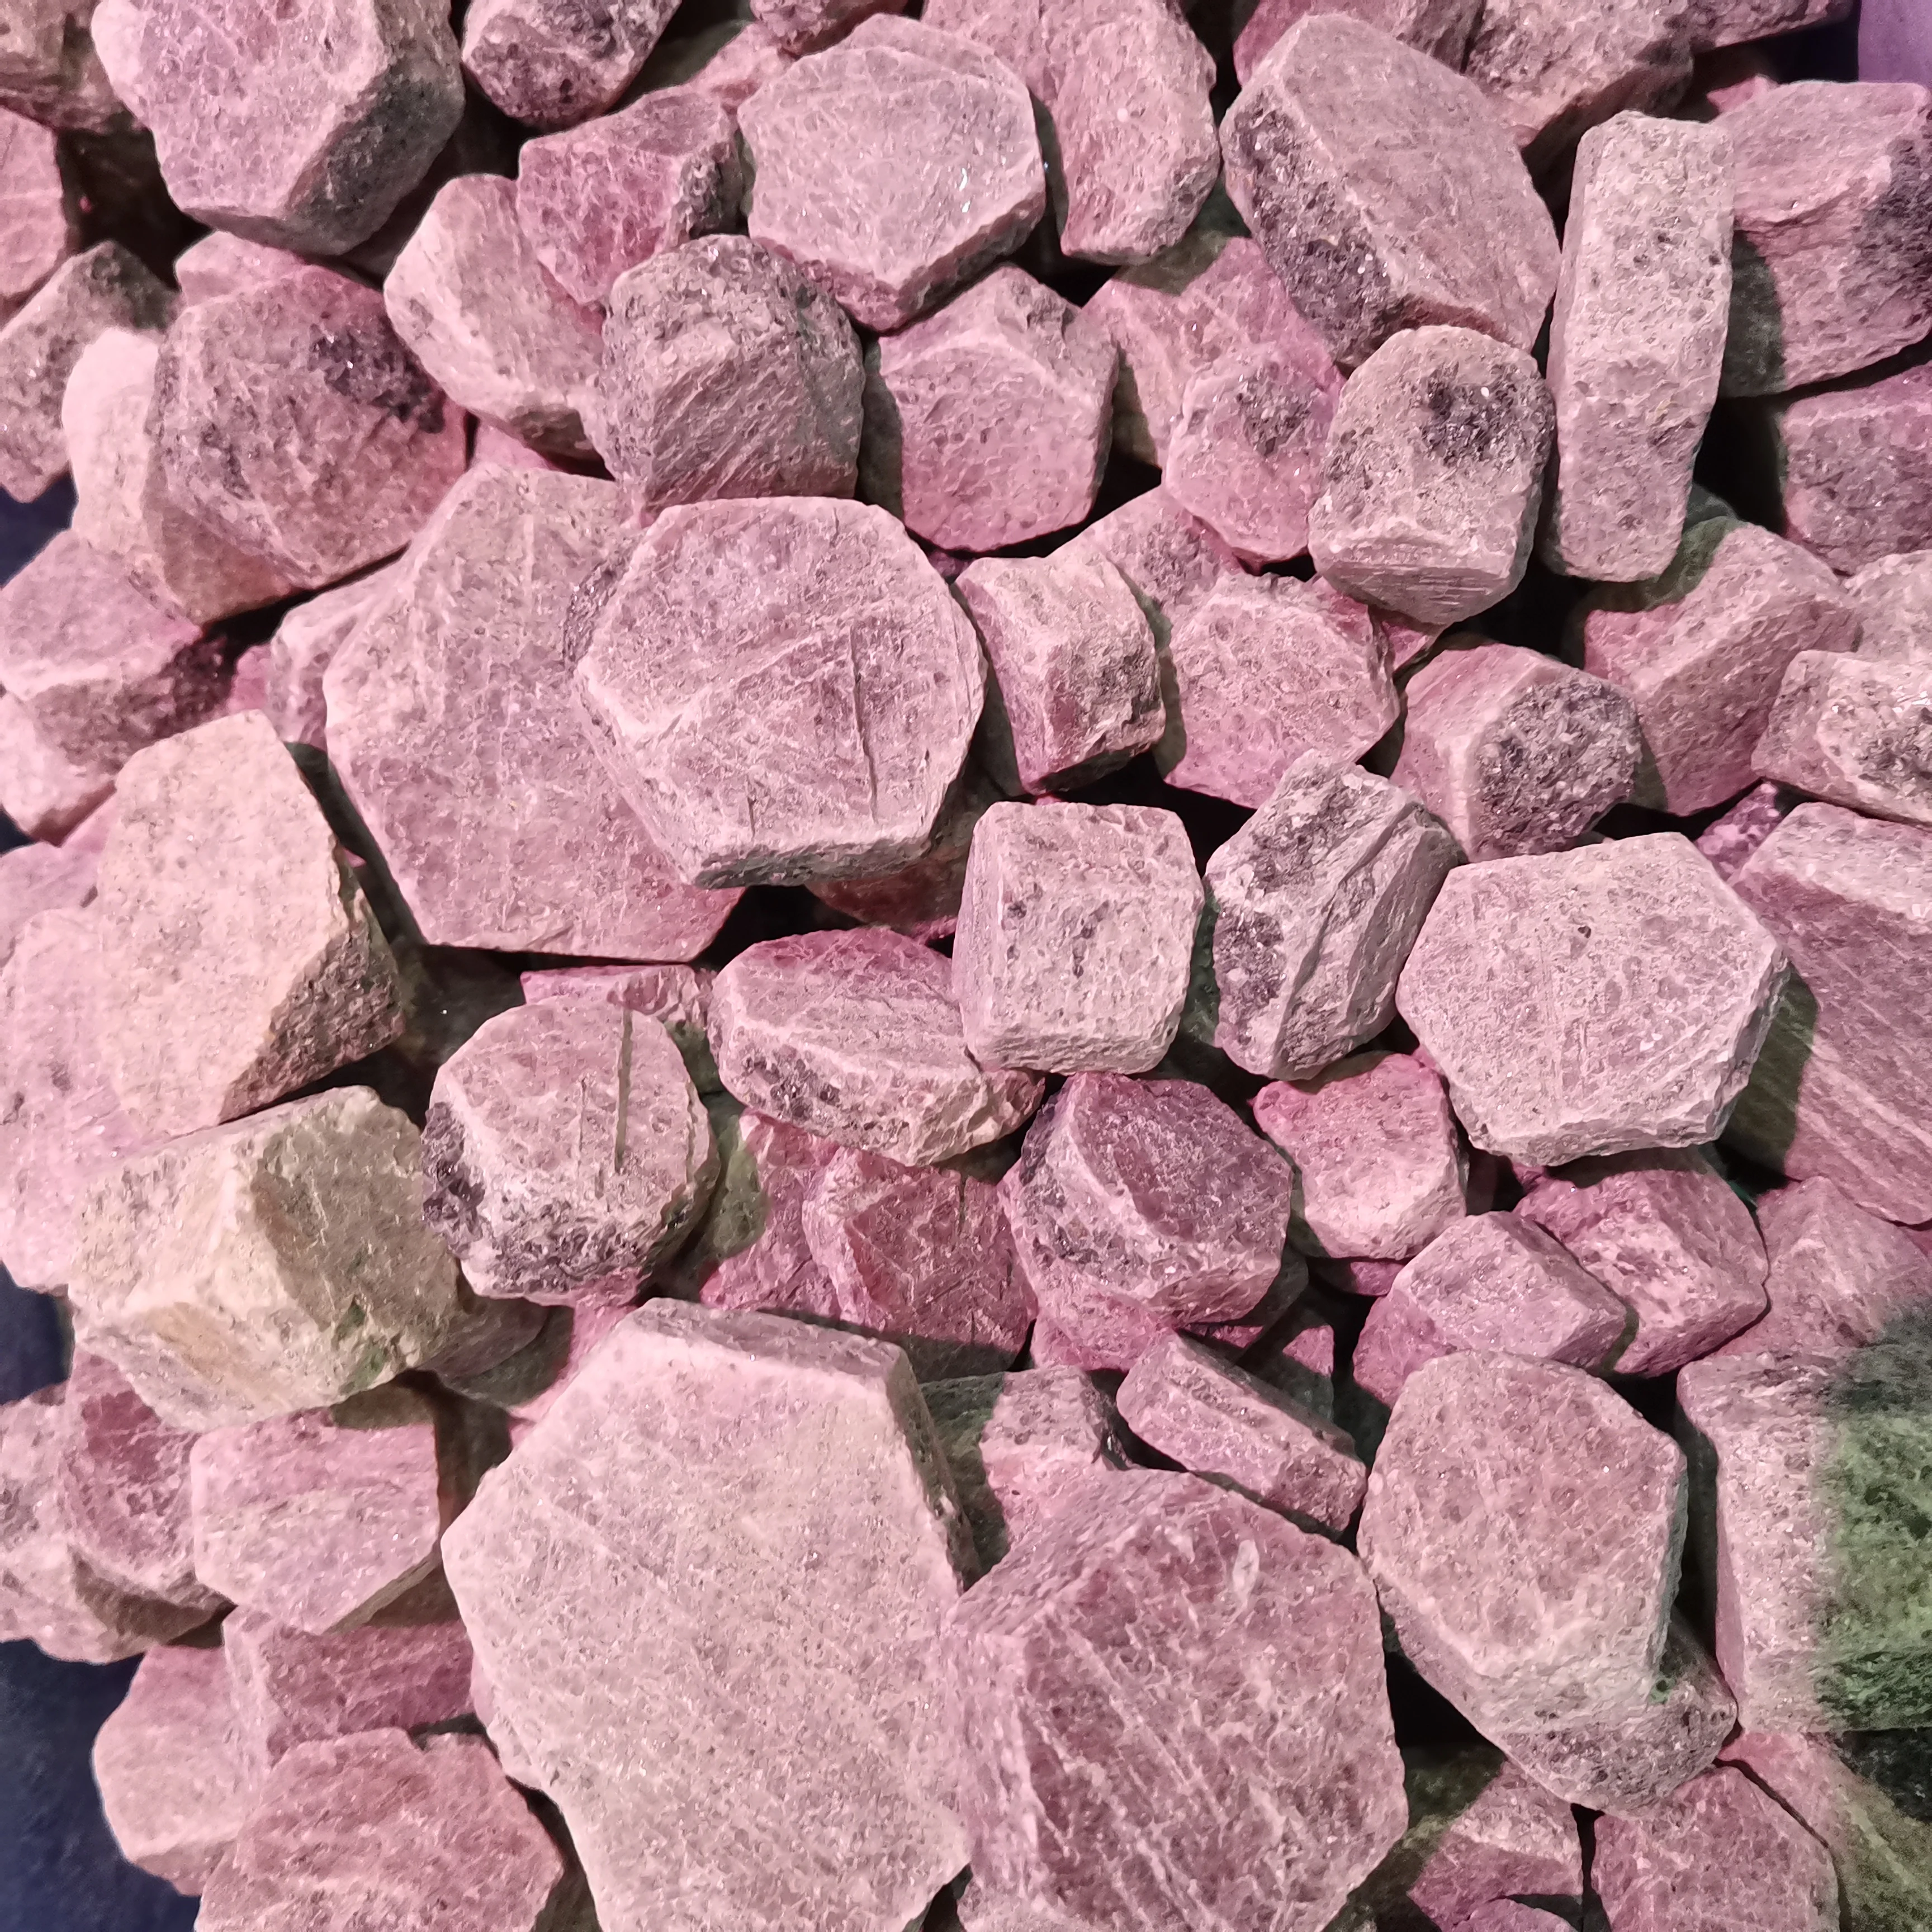 

400g Ruby Natural Crystal Gem Quartz Crystal Reiki Cluster Healing Stones Mineral Specimen Home Decoration Raw Gemstone 1pcs